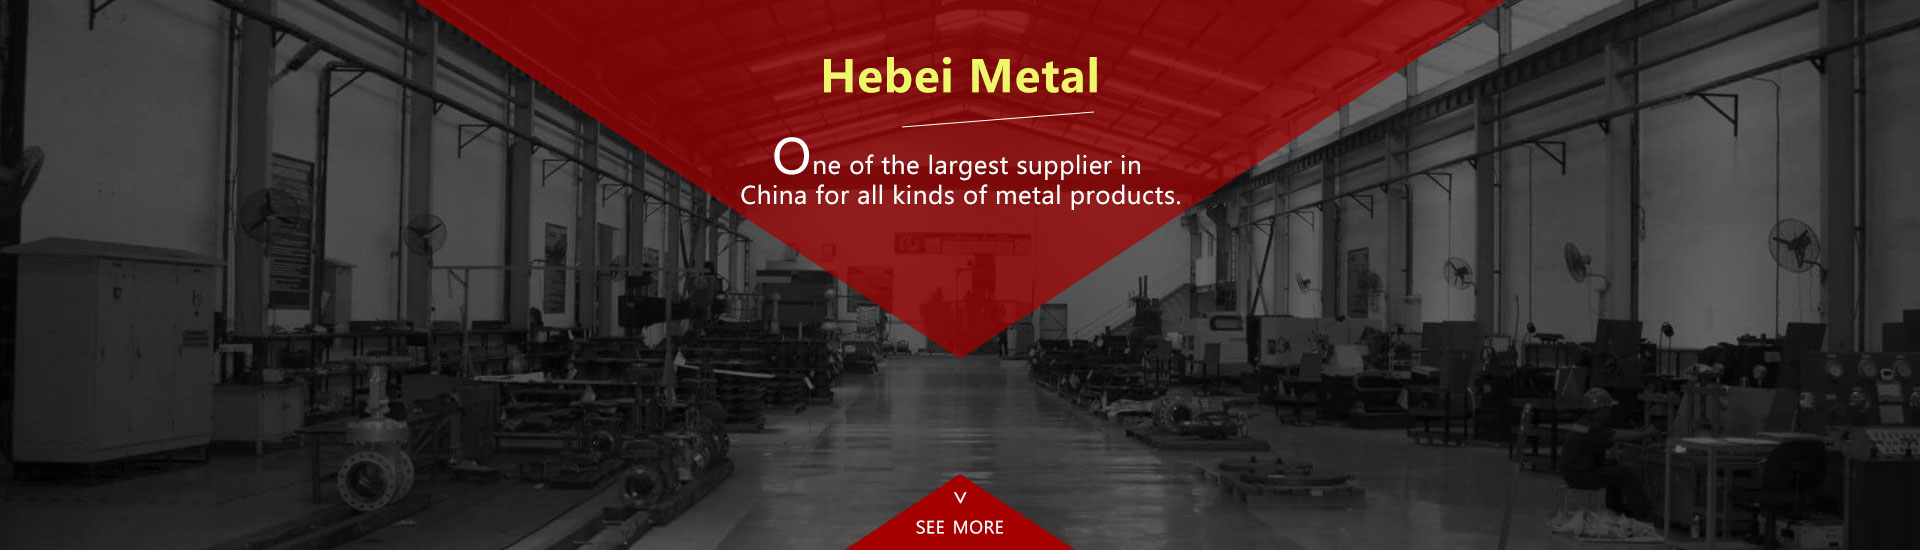 Hebei-Metal